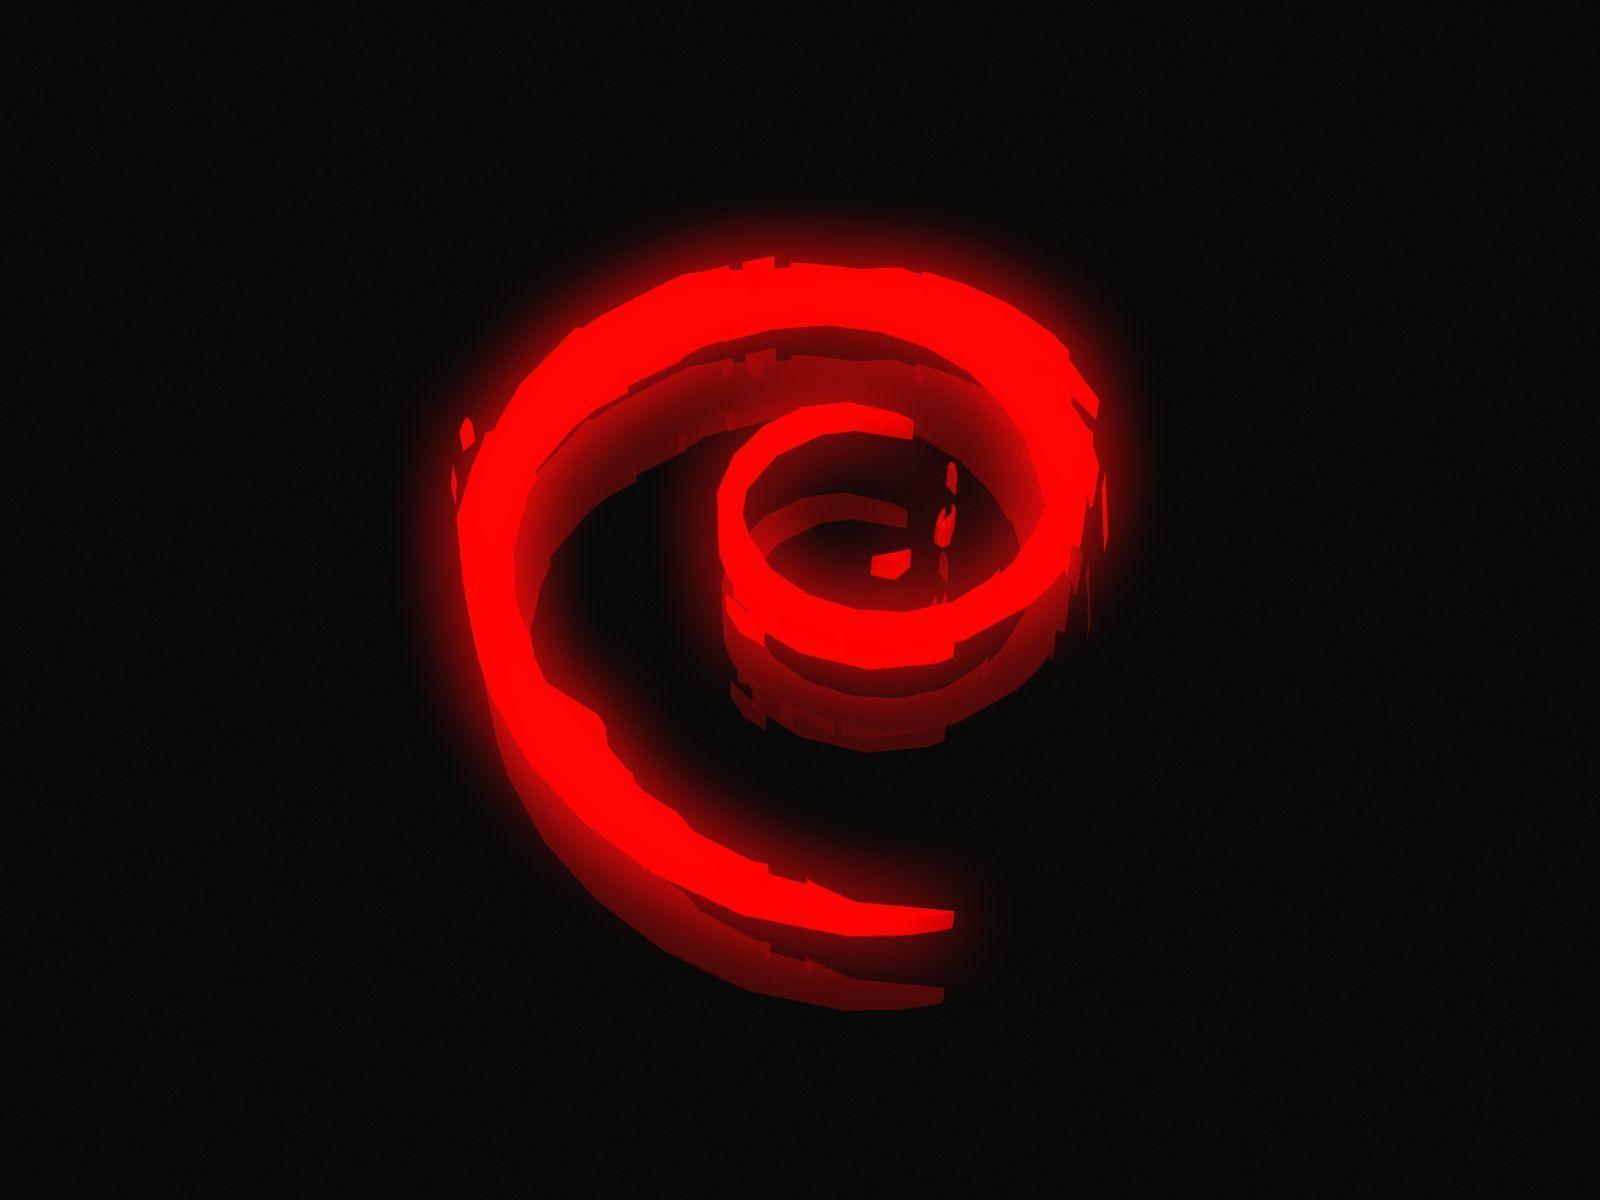 Hình nền đèn neon đỏ là một lựa chọn tuyệt vời để tạo điểm nhấn cho máy tính của bạn. Hãy khám phá những thiết kế độc đáo và cuốn hút trong hình nền đèn neon đỏ của chúng tôi.